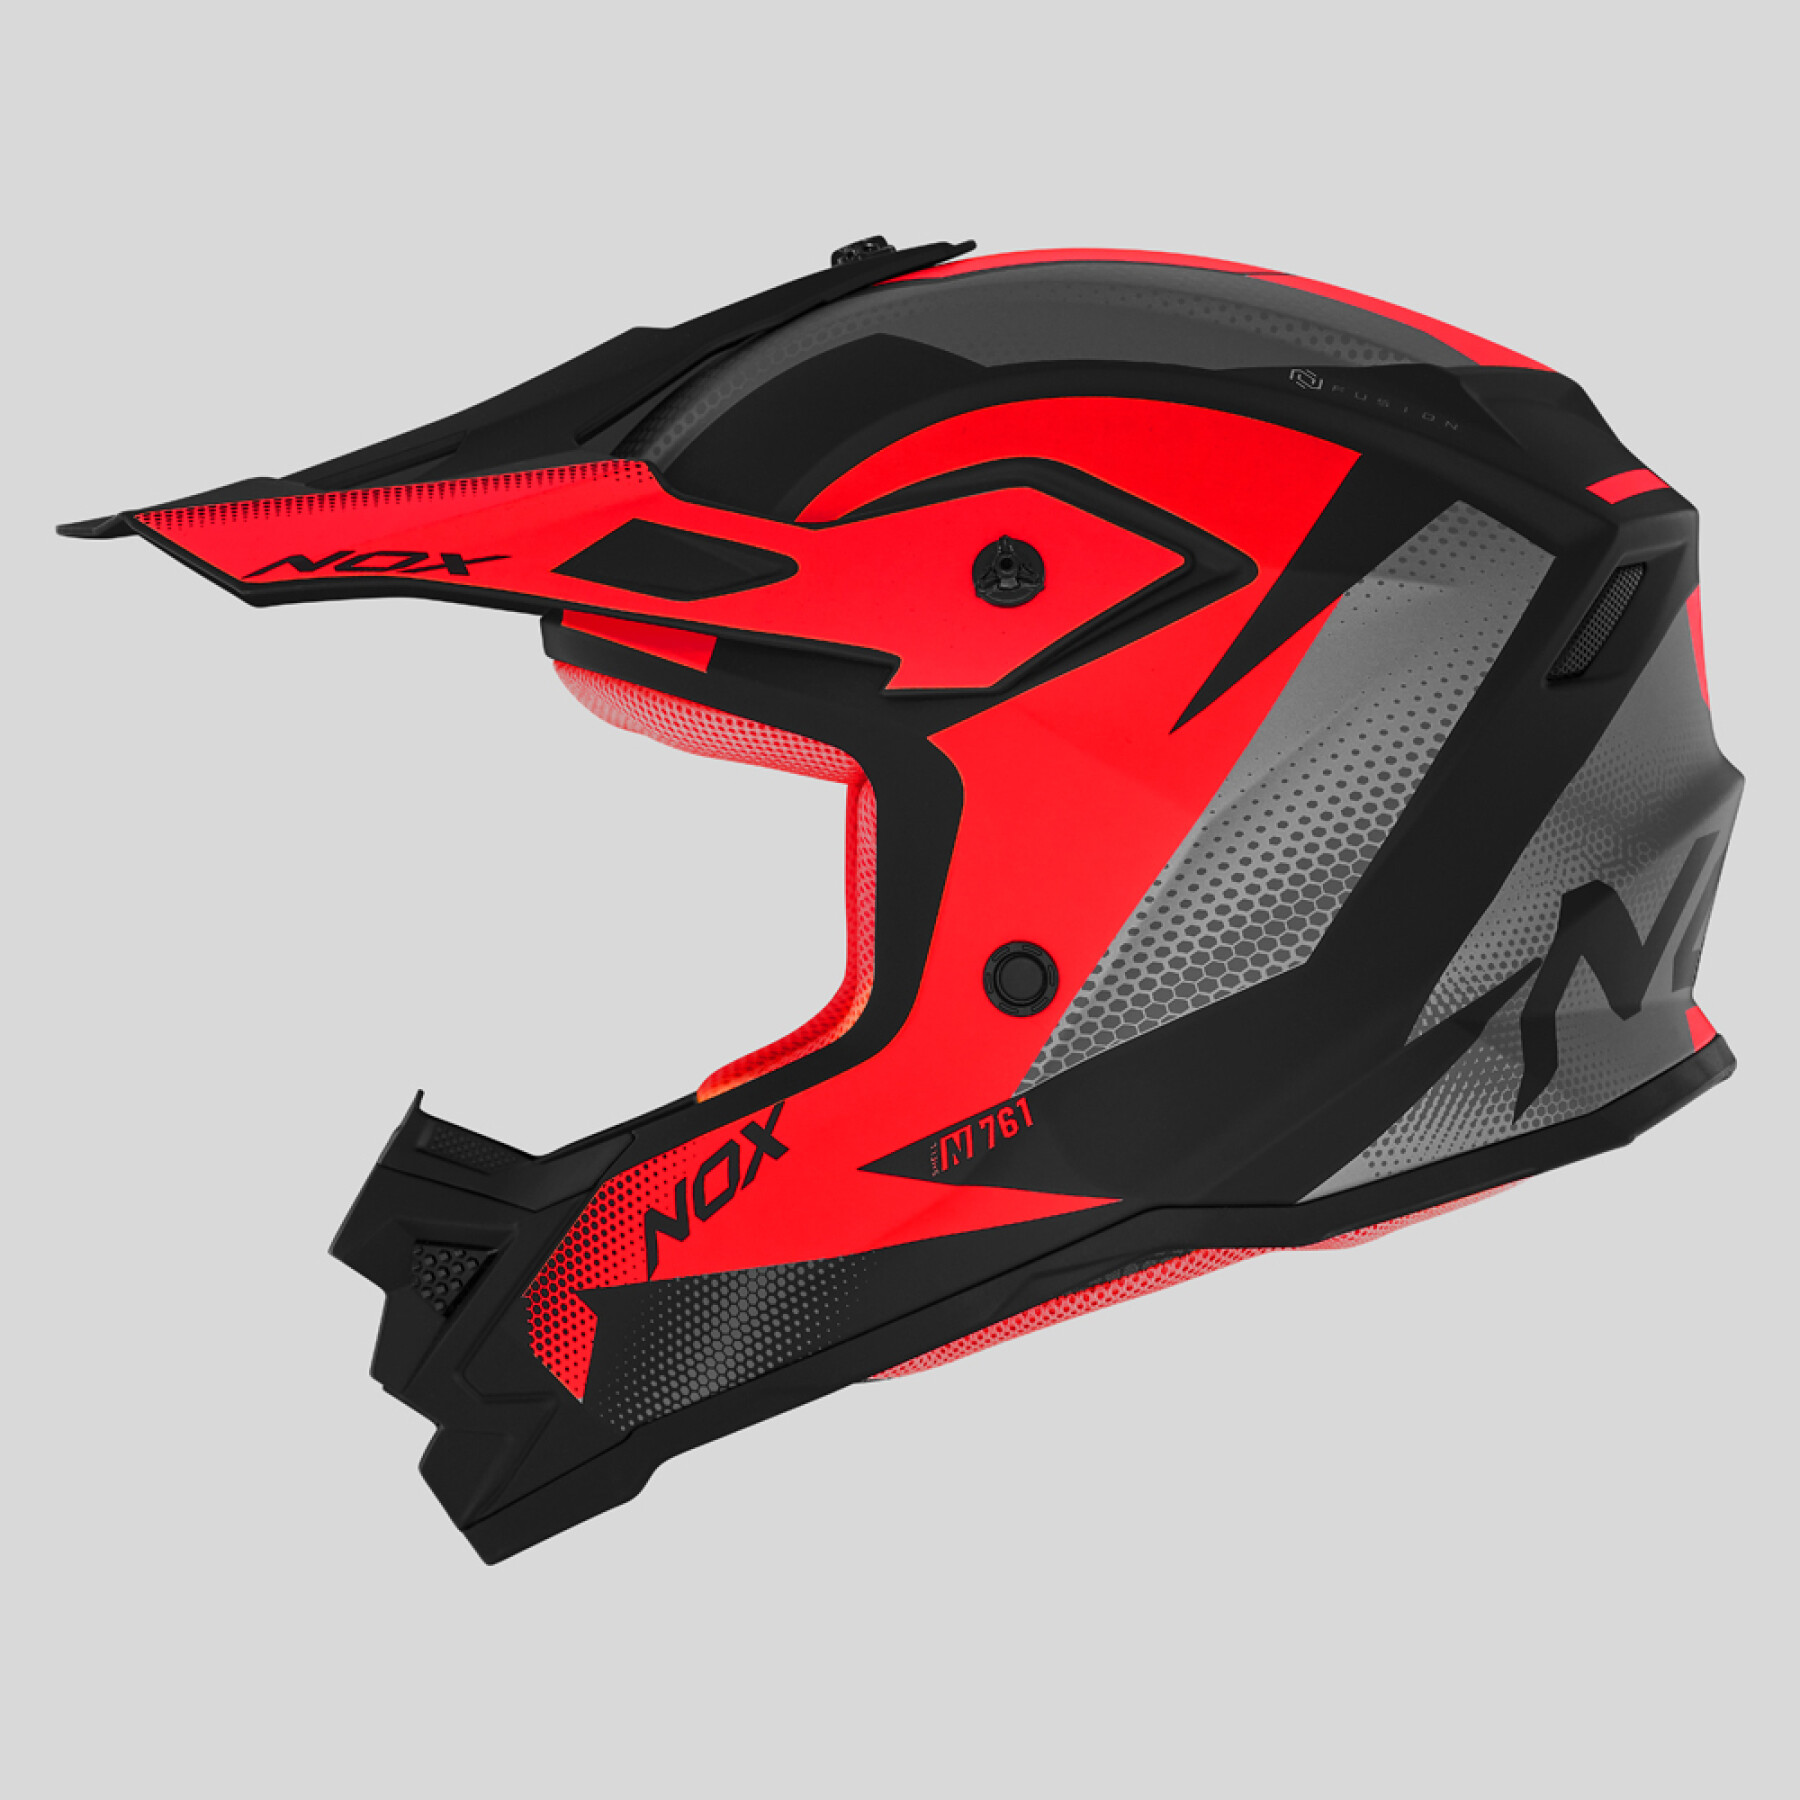 Motorcycle helmet Nox N761